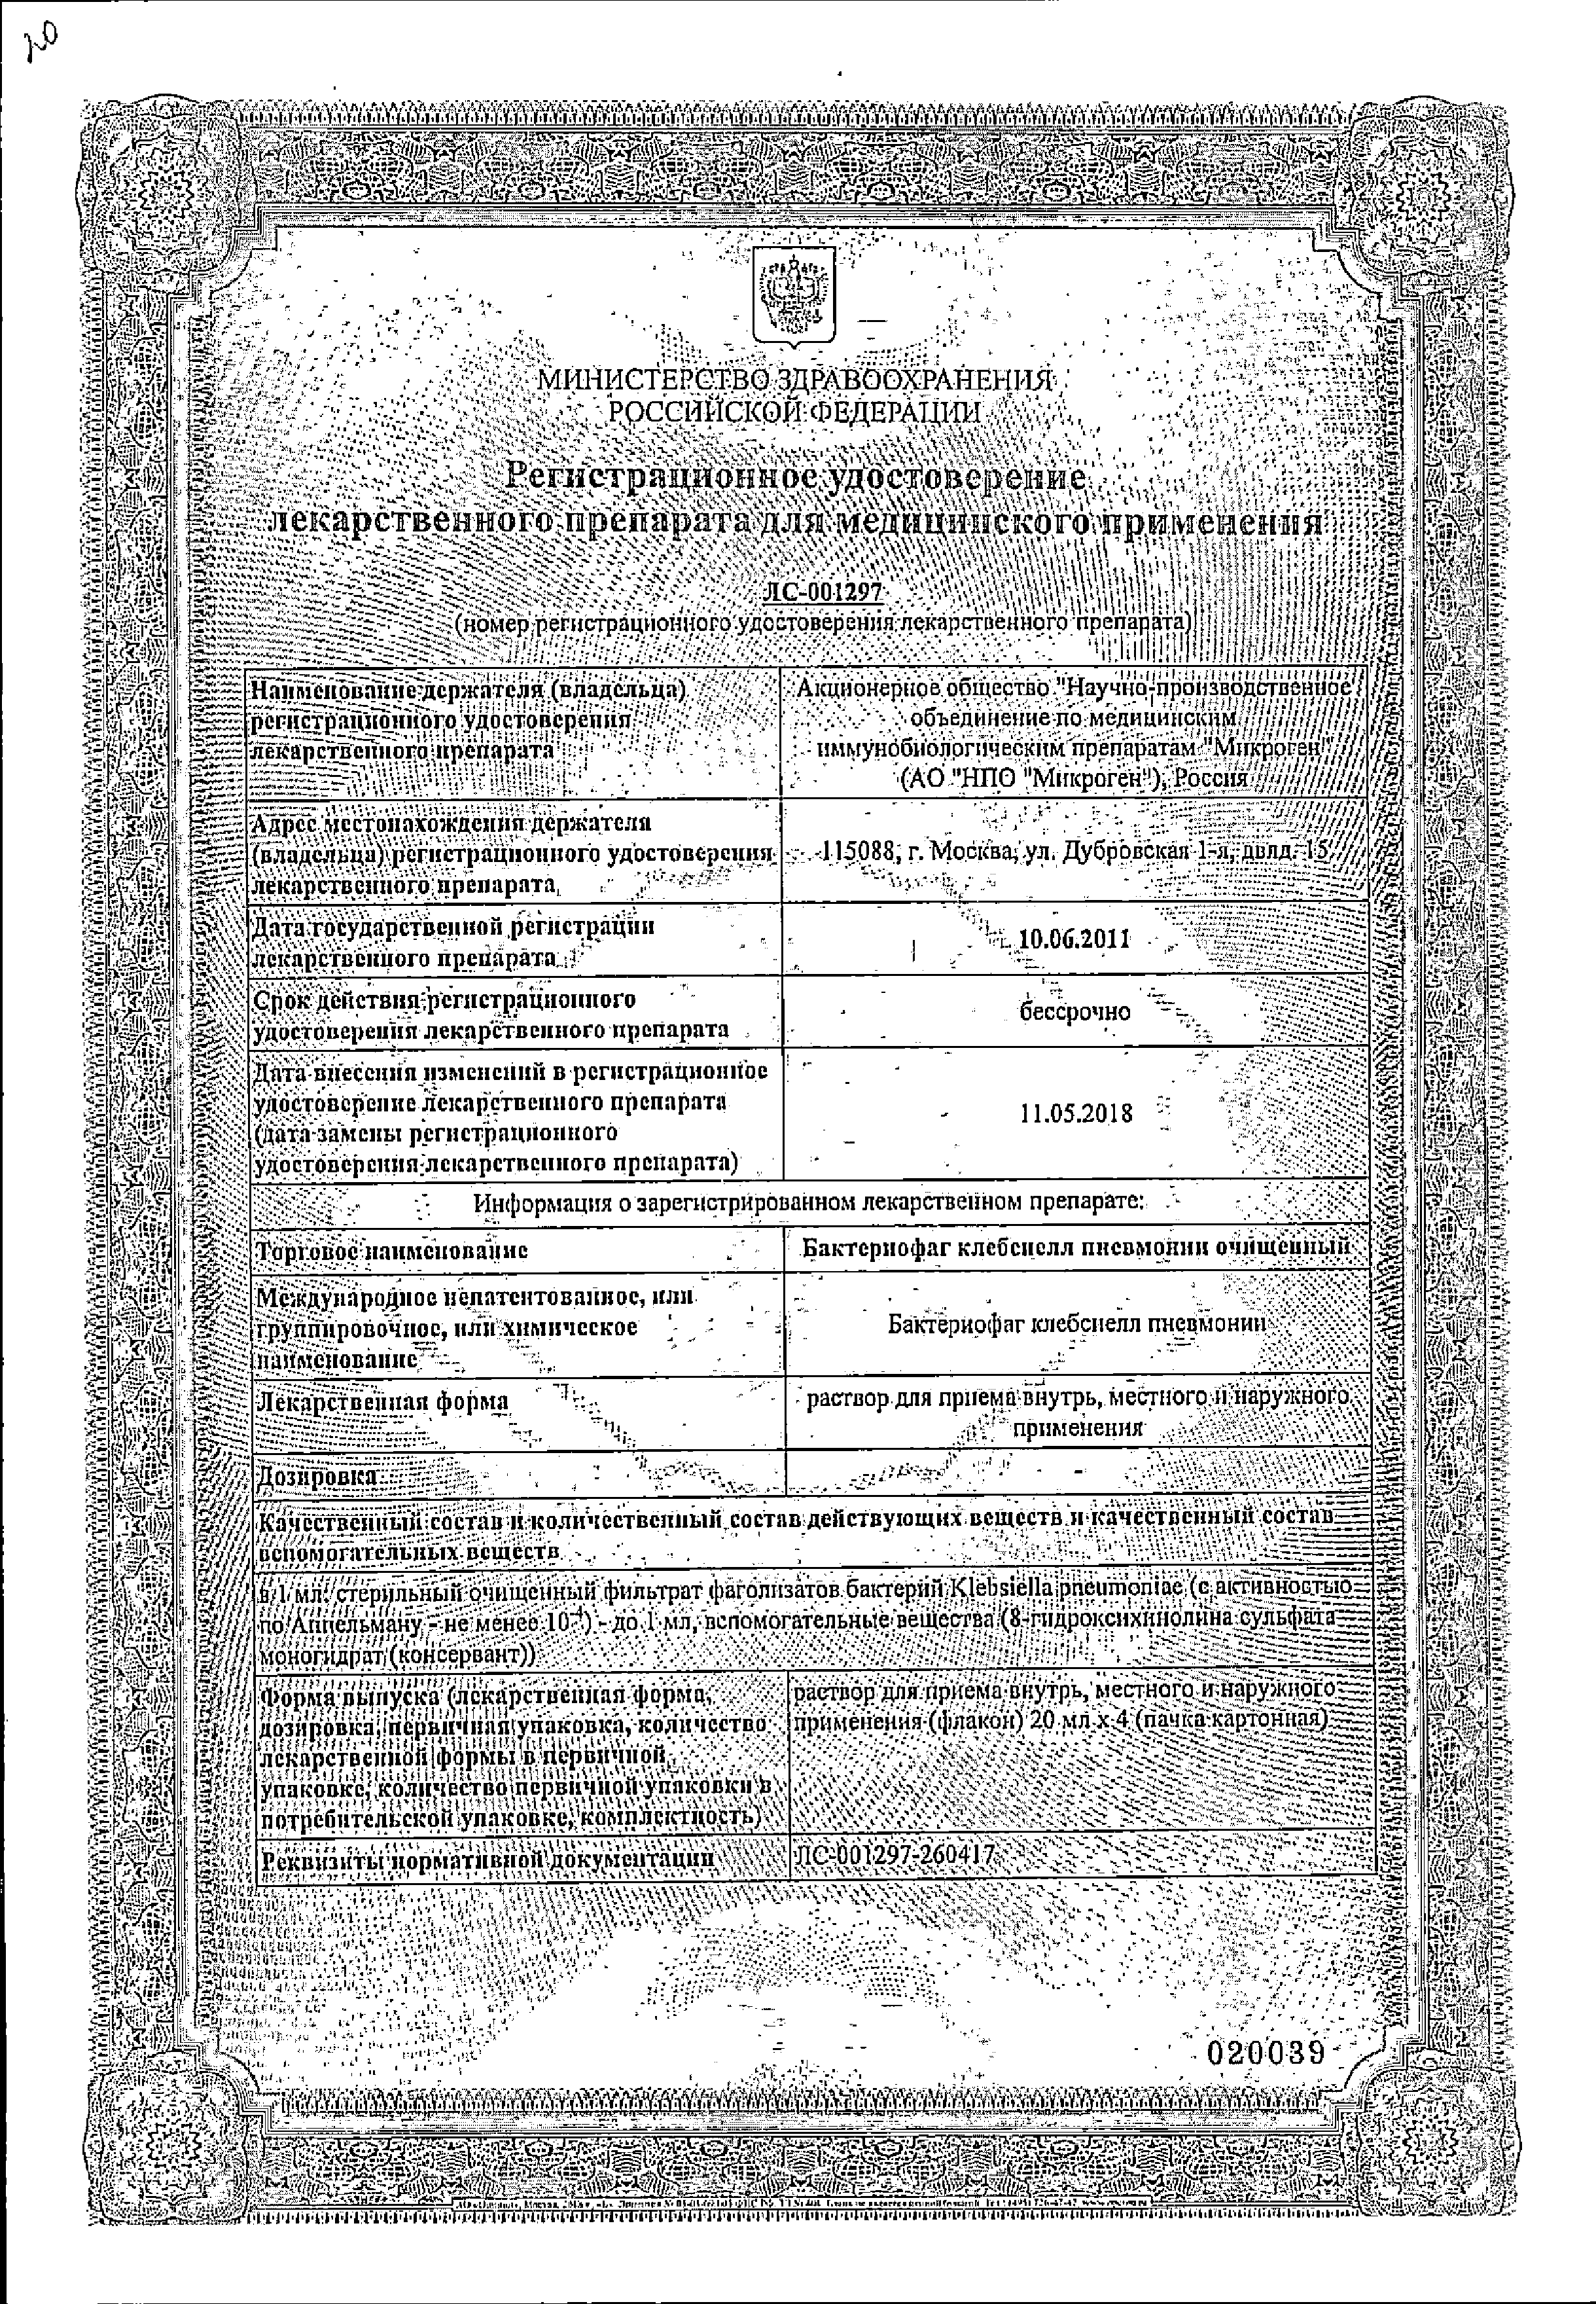 Бактериофаг клебсиелл пневмонии очищенный жидкий сертификат